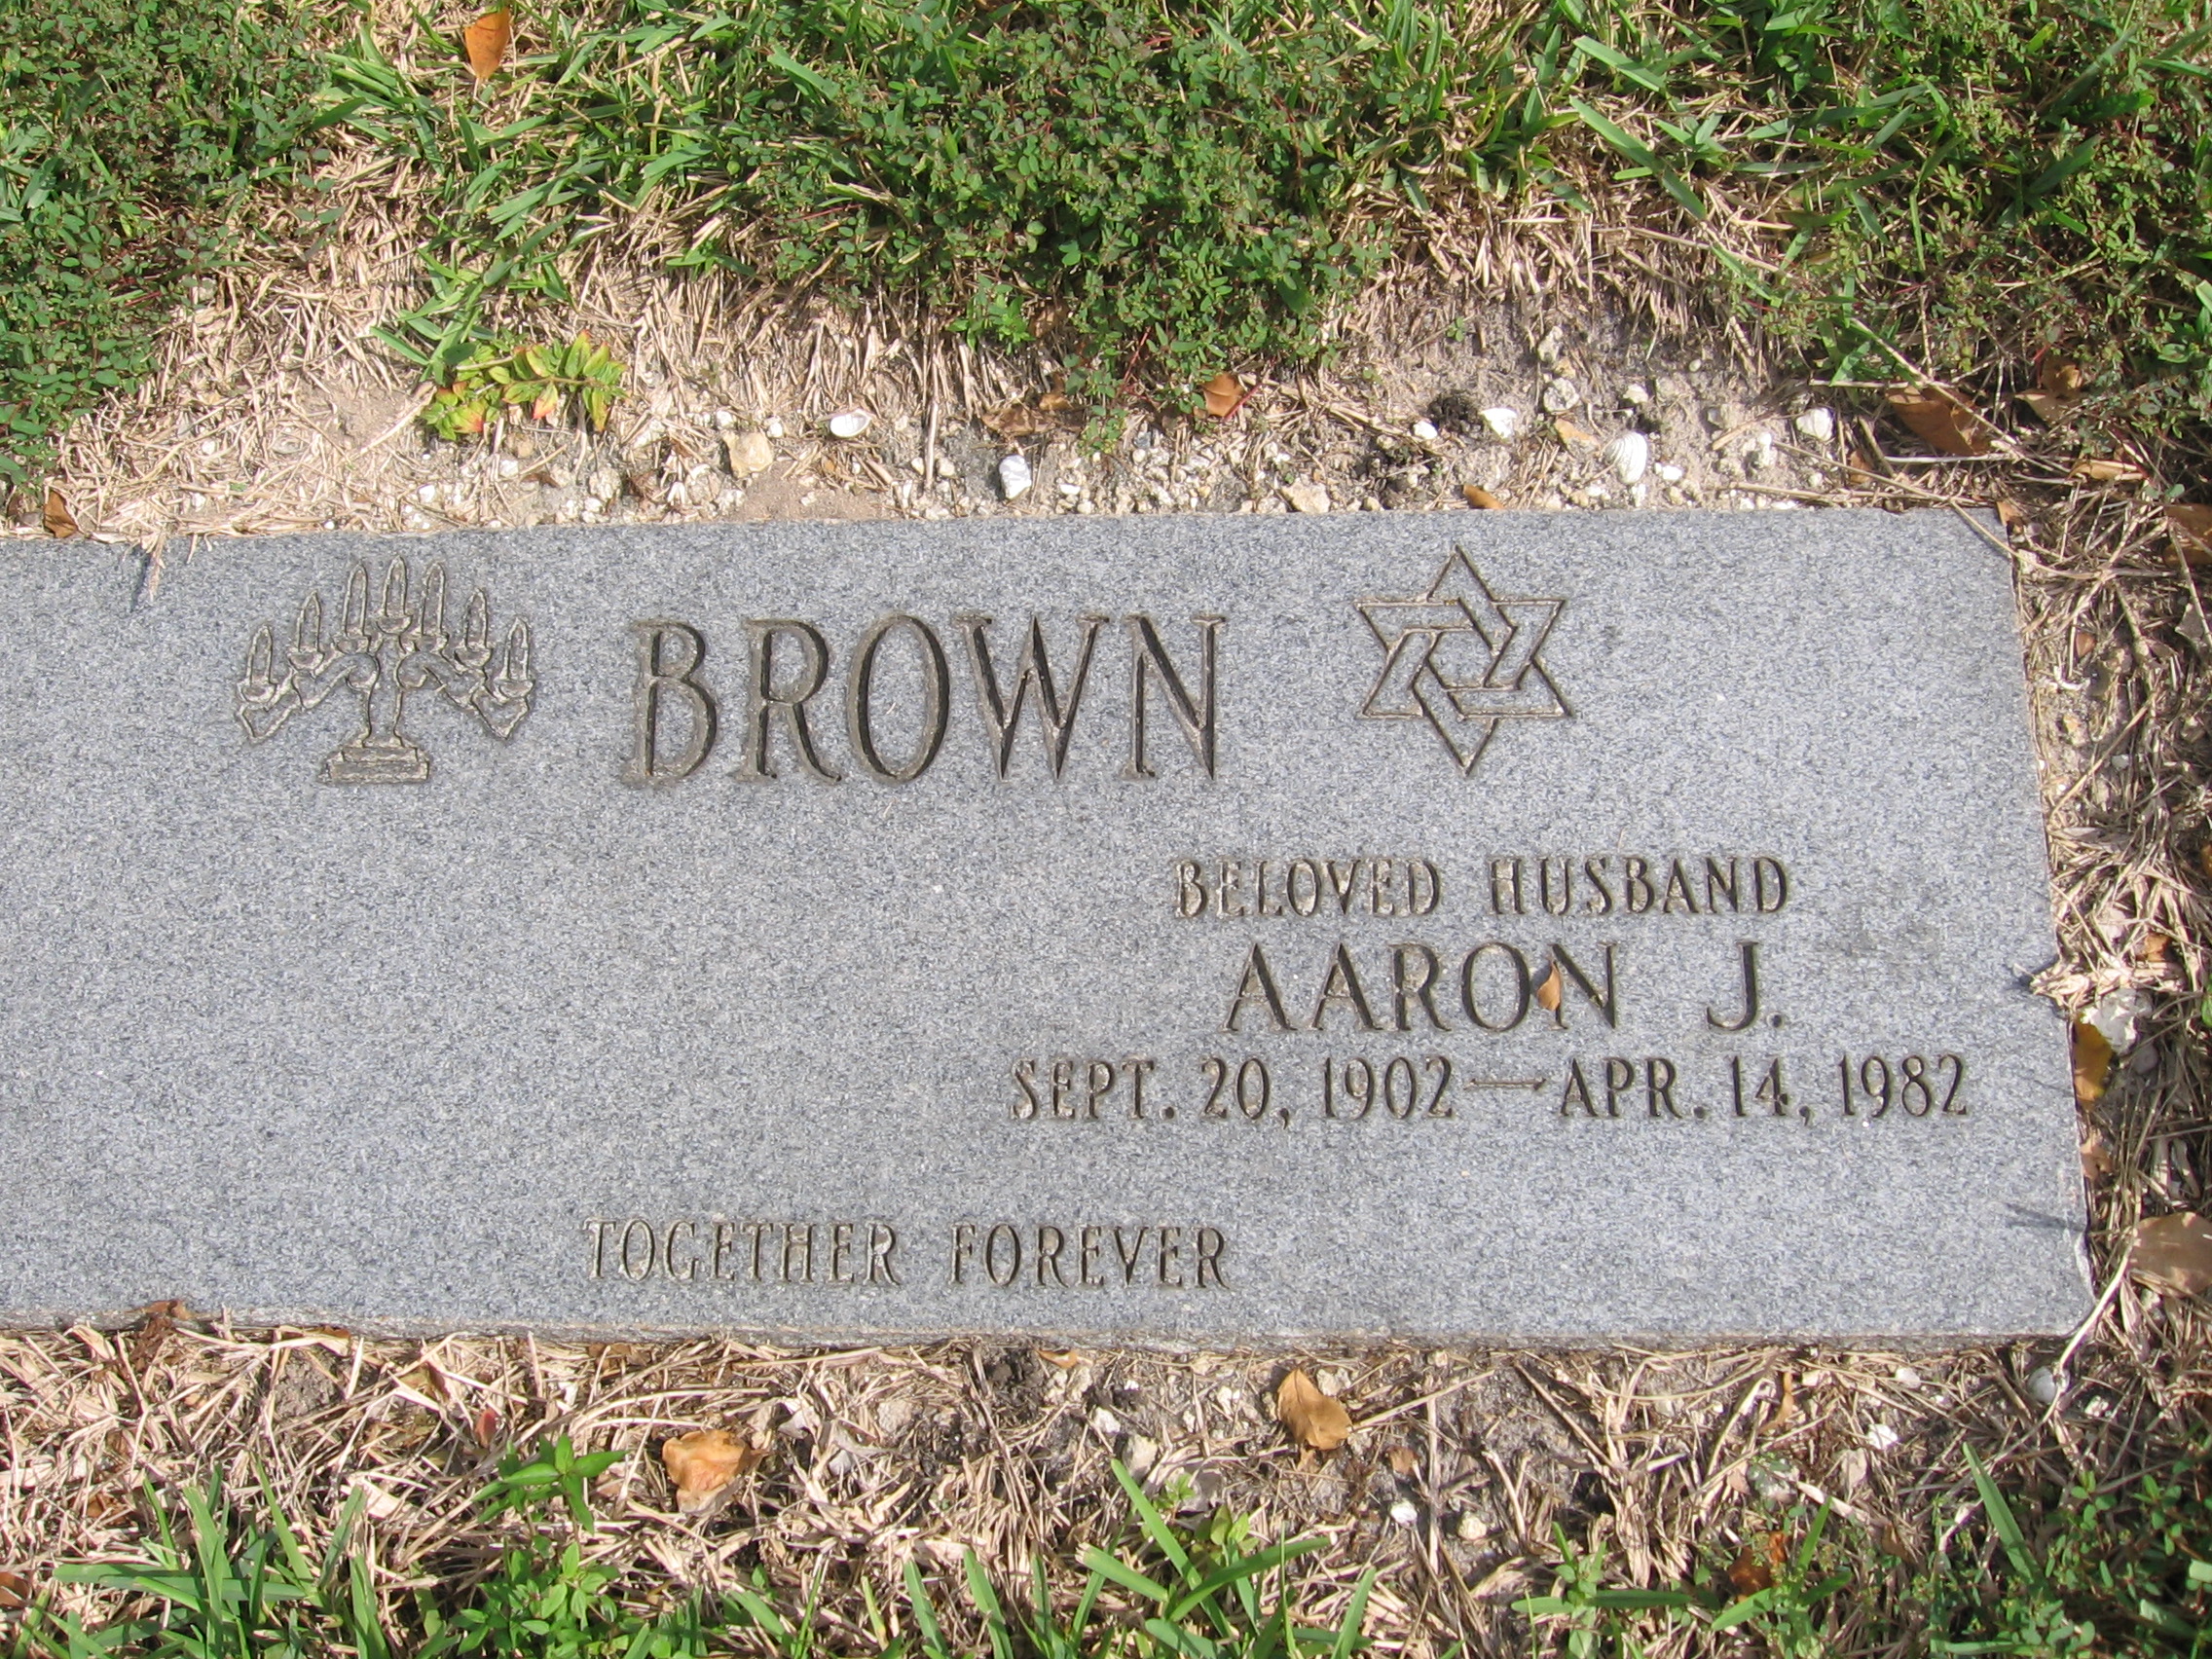 Aaron J Brown